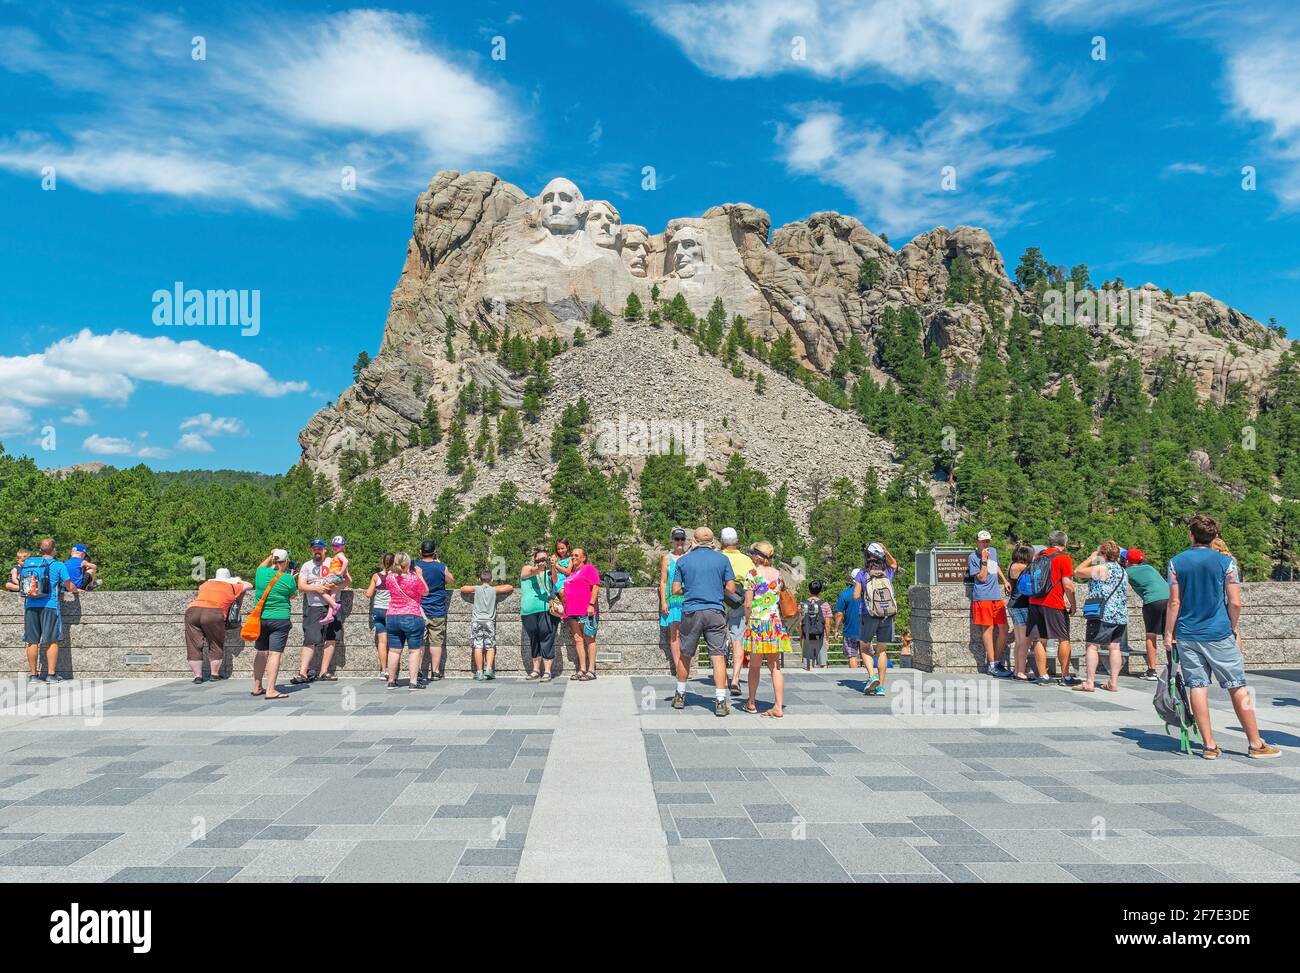 Touristes appréciant la vue sur le monument national de Mount Rushmore en été, Dakota du Sud, États-Unis d'Amérique (USA). Banque D'Images